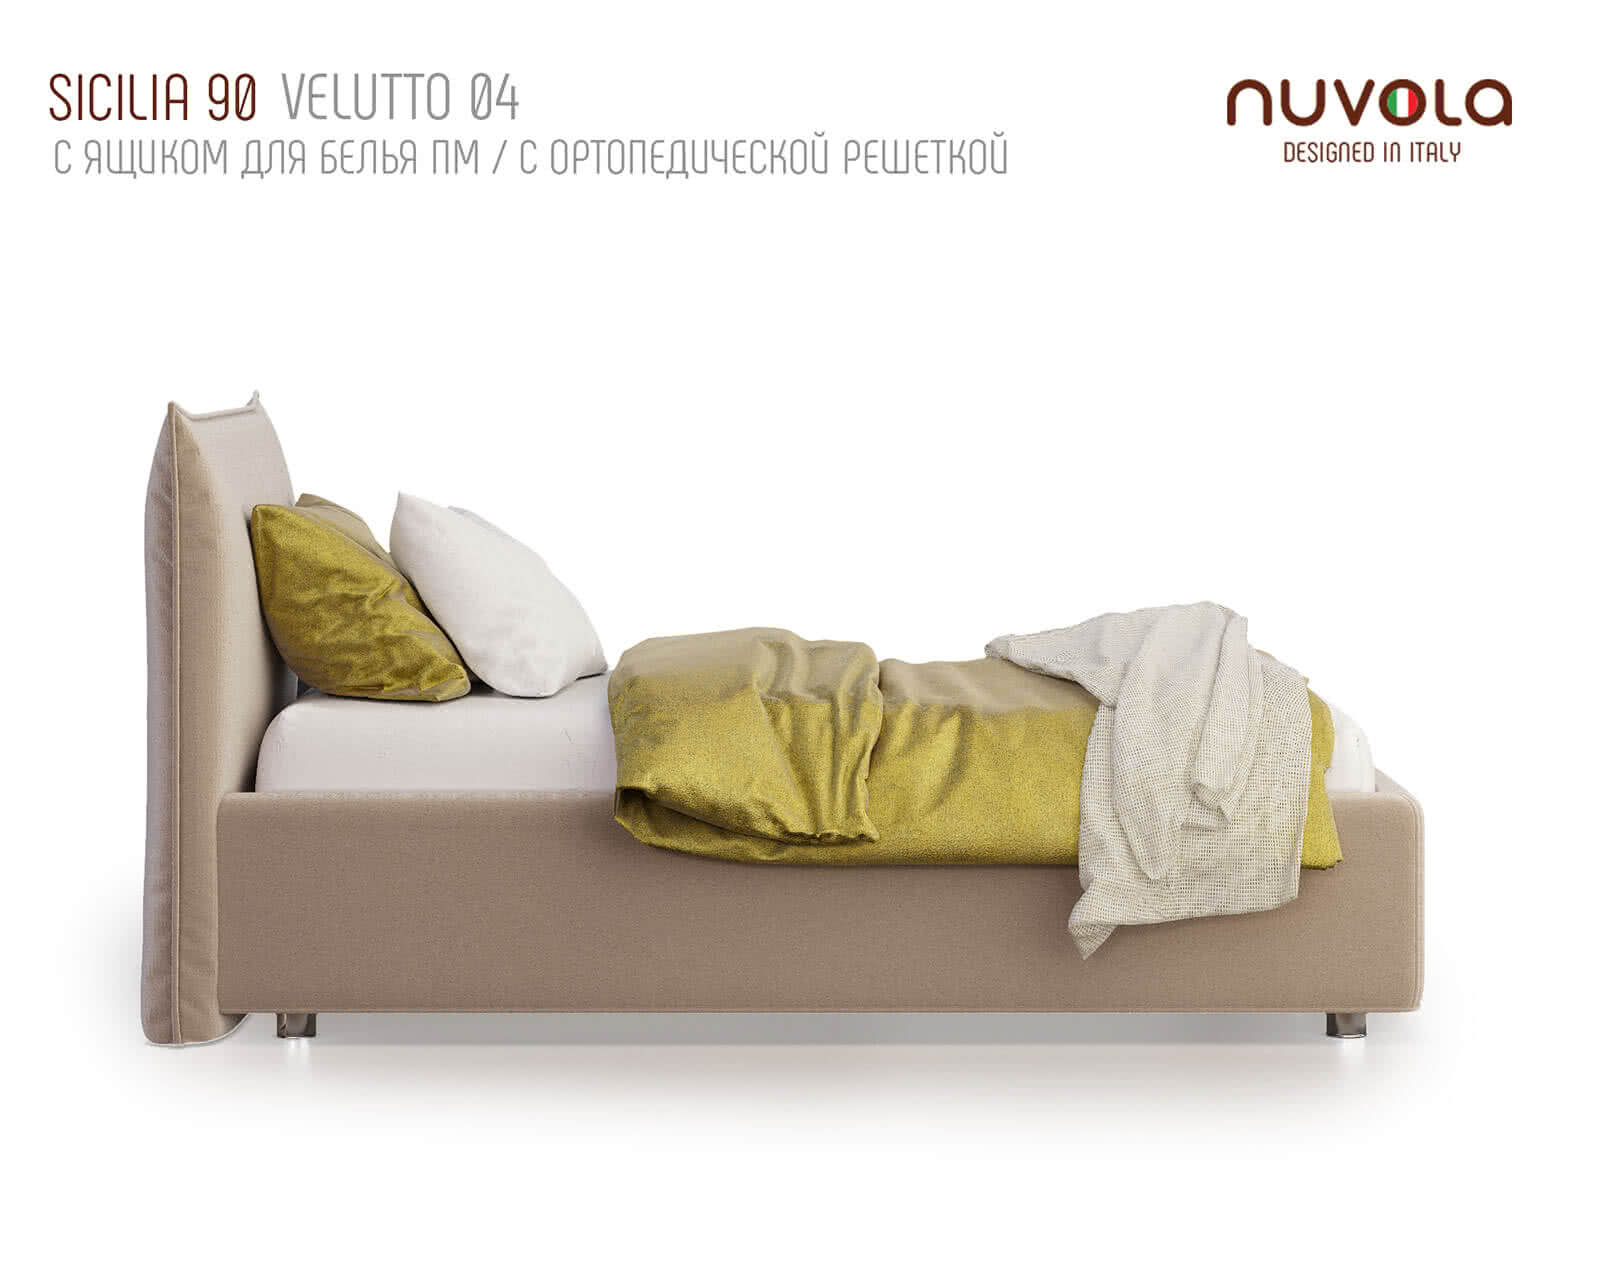 Сицилия 1 мая 160. Кровать Sicilia Nuvola. Нувола кровать Сицилия. Кровать Nuvola 1. Кровать Nuvola 7.